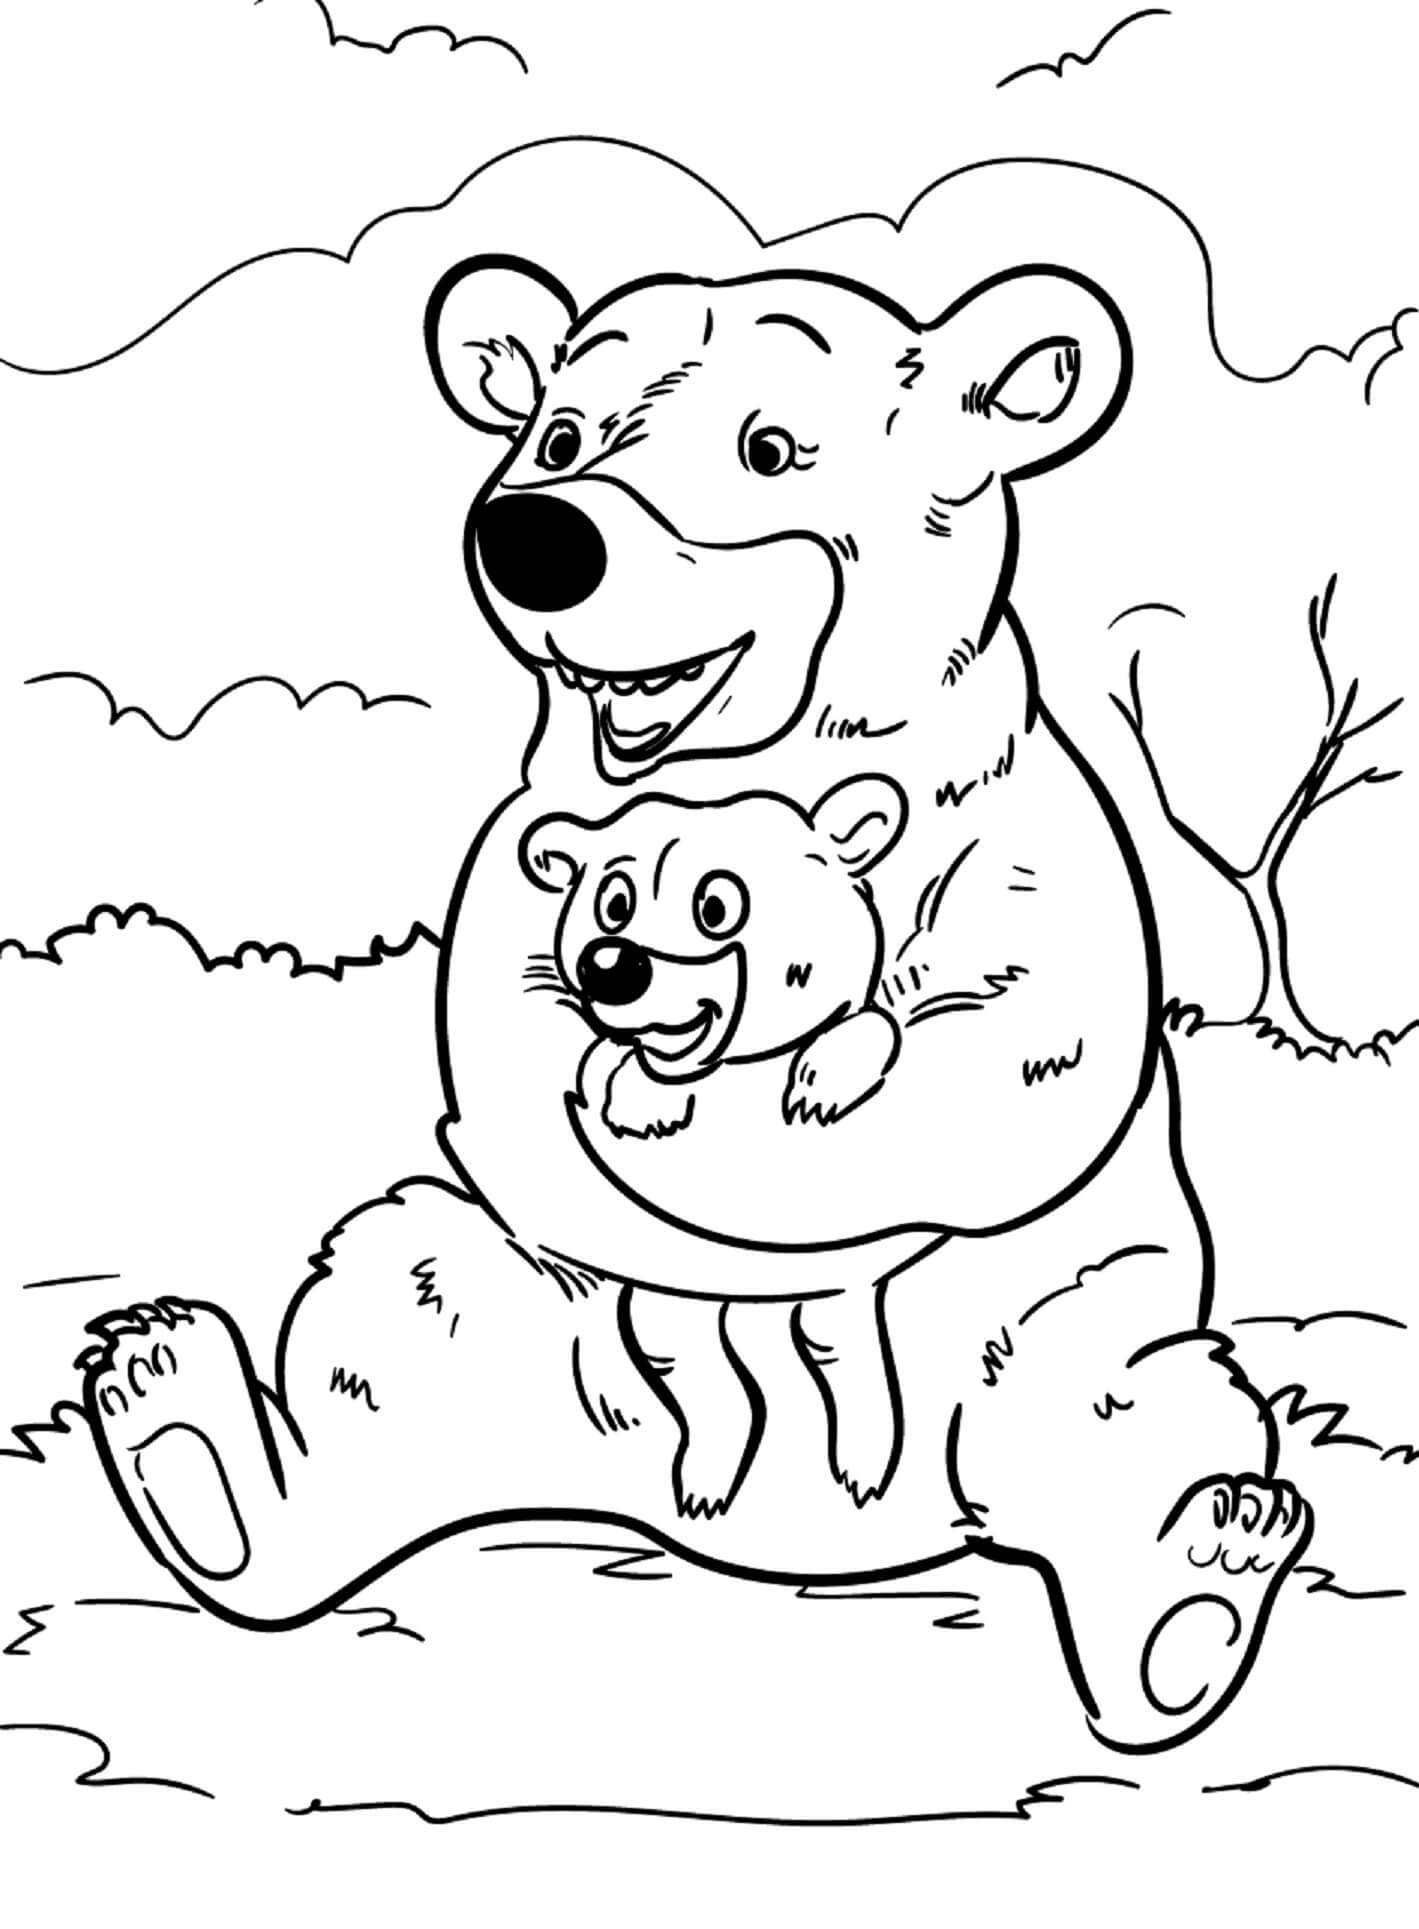 Bärenmutter umarmt Bären enbaby